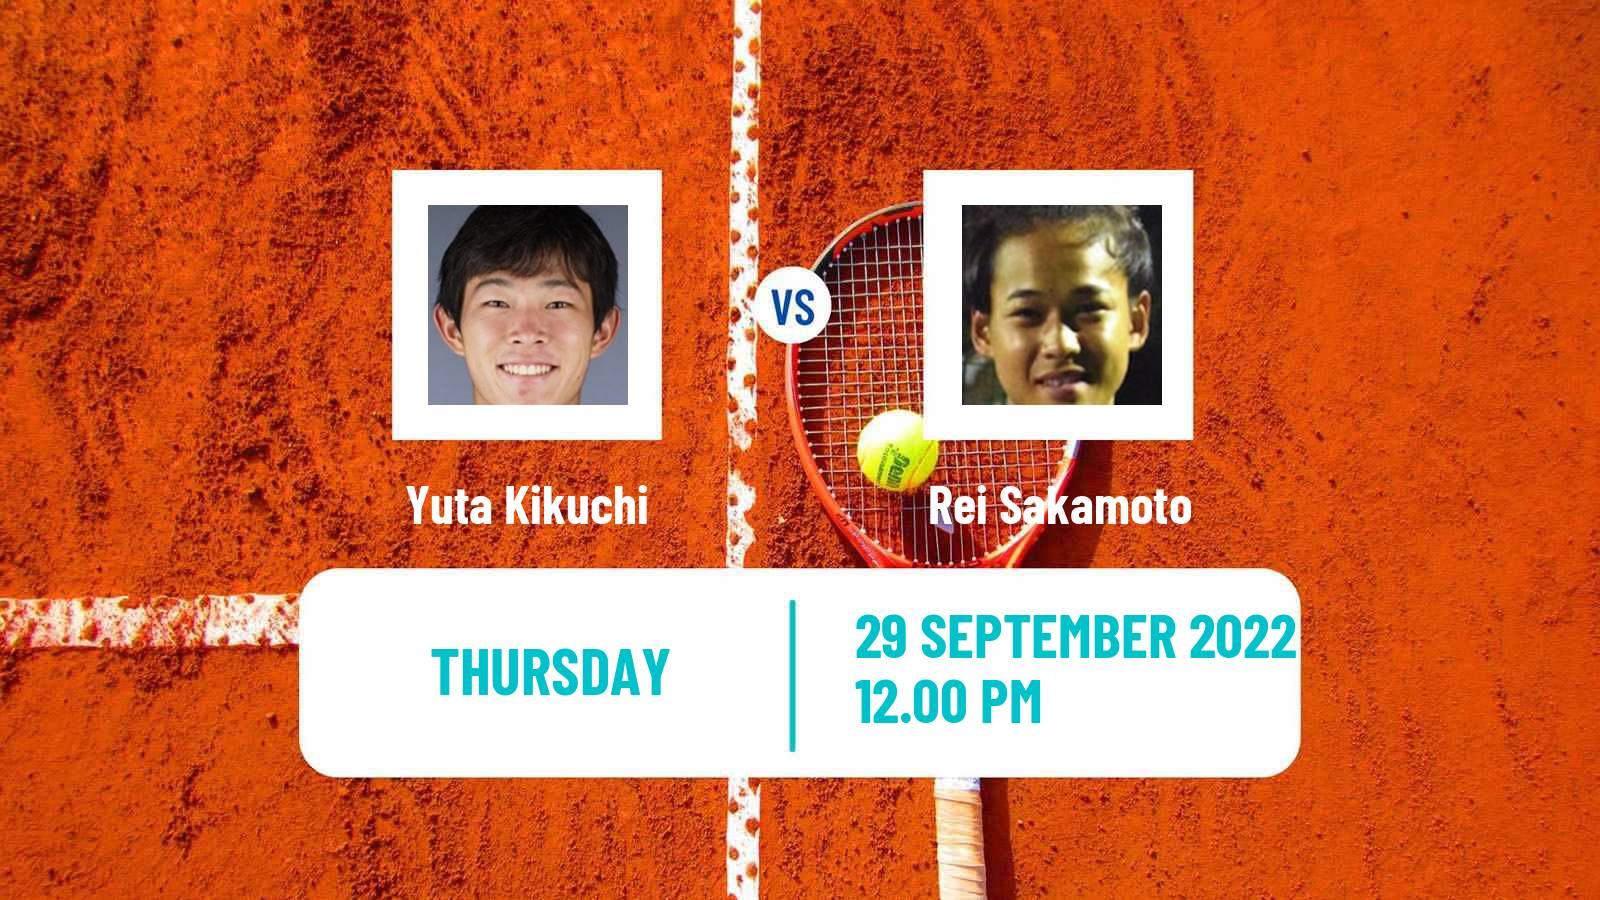 Tennis ITF Tournaments Yuta Kikuchi - Rei Sakamoto